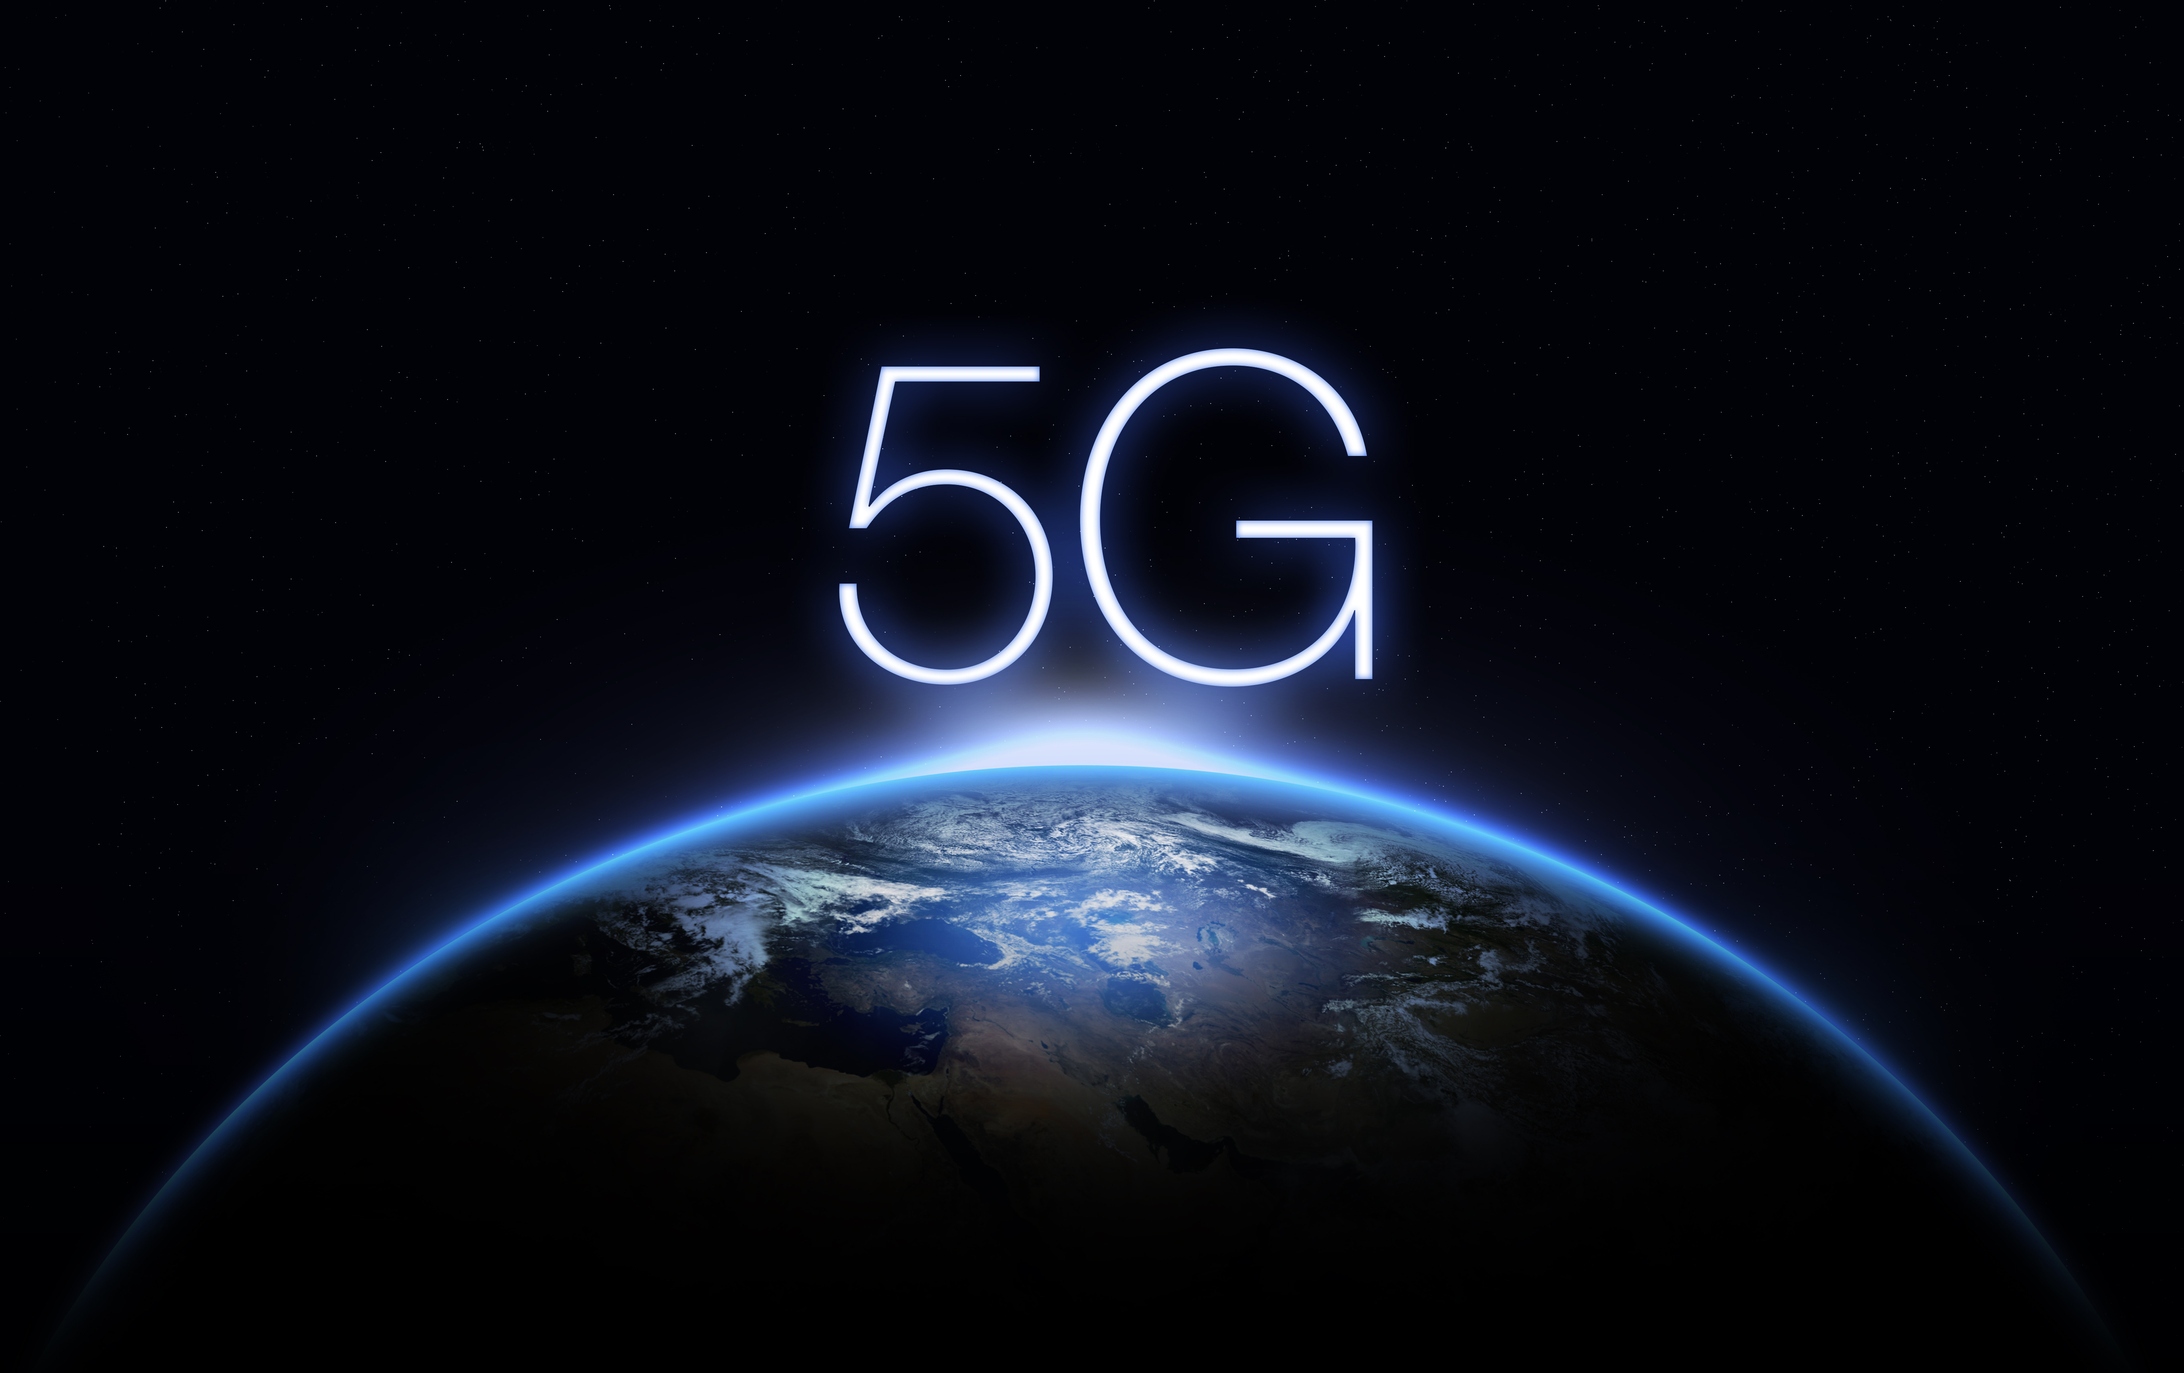 افزایش اتصال اینترنت ۵G در دو سال آینده